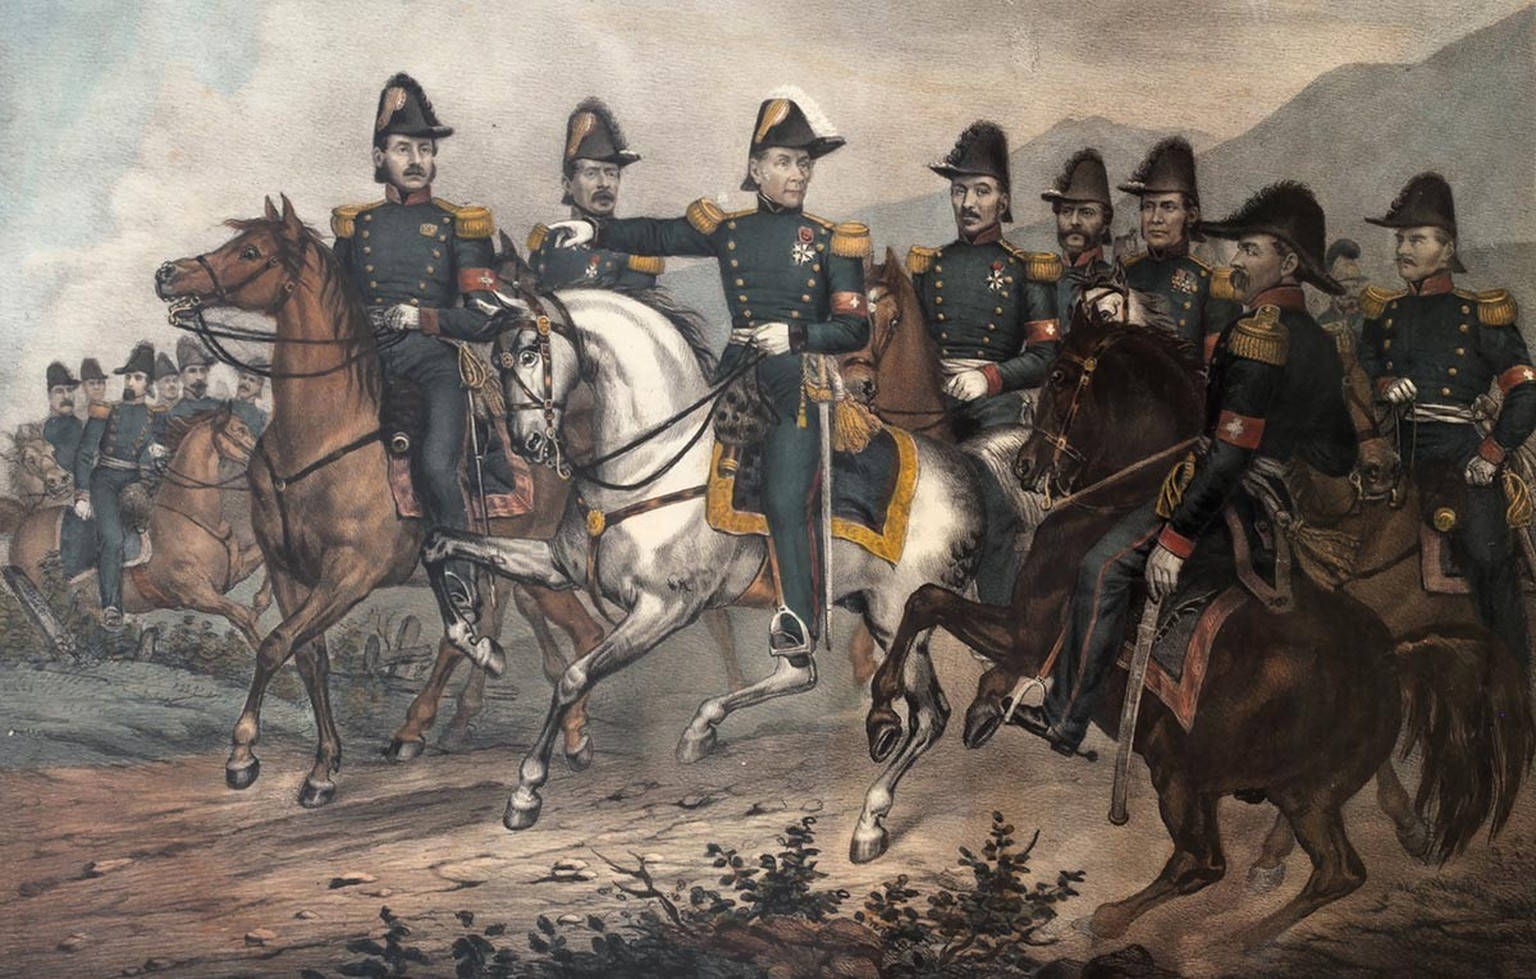 Lagebesprechung von General Dufour (Mitte) mit seinem Stab. Mit dabei sind auch Louis Rilliet-de Constant (Vierter von links) und Peter Ludwig von Donatz (Sechster von links).
https://de.m.wikipedia.o ...